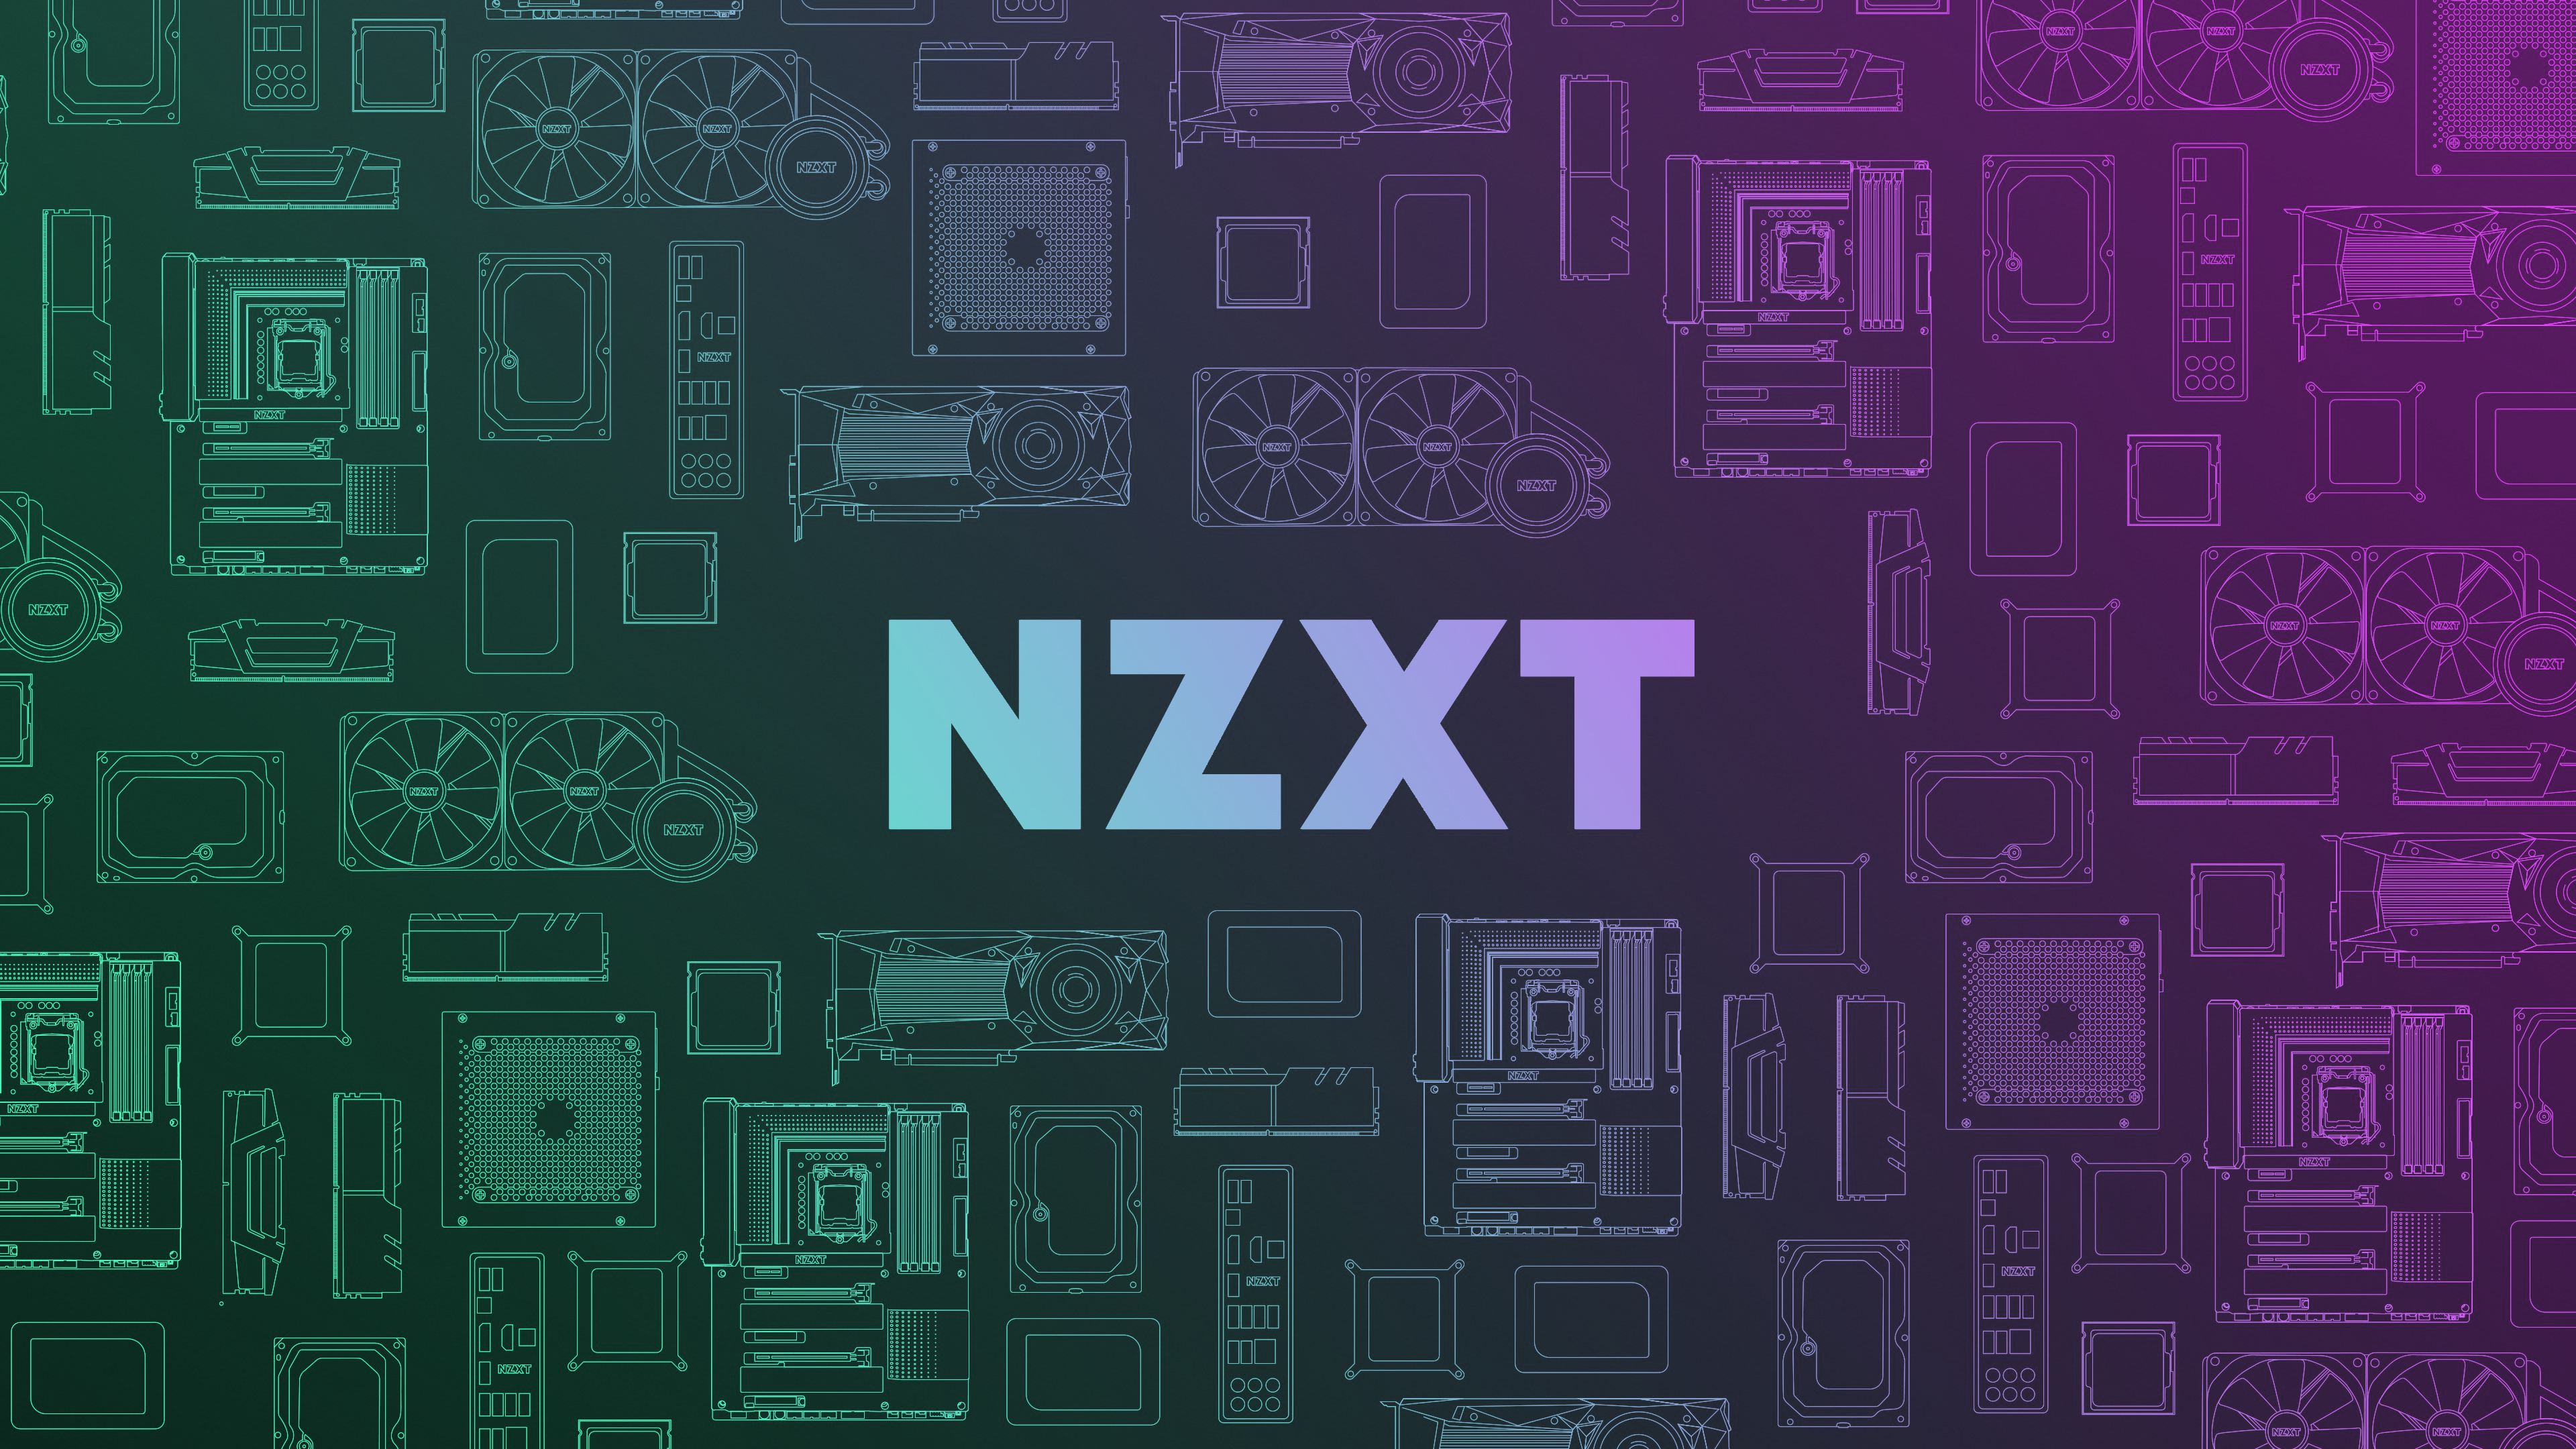 Популярные заставки и фоны Nzxt на компьютер